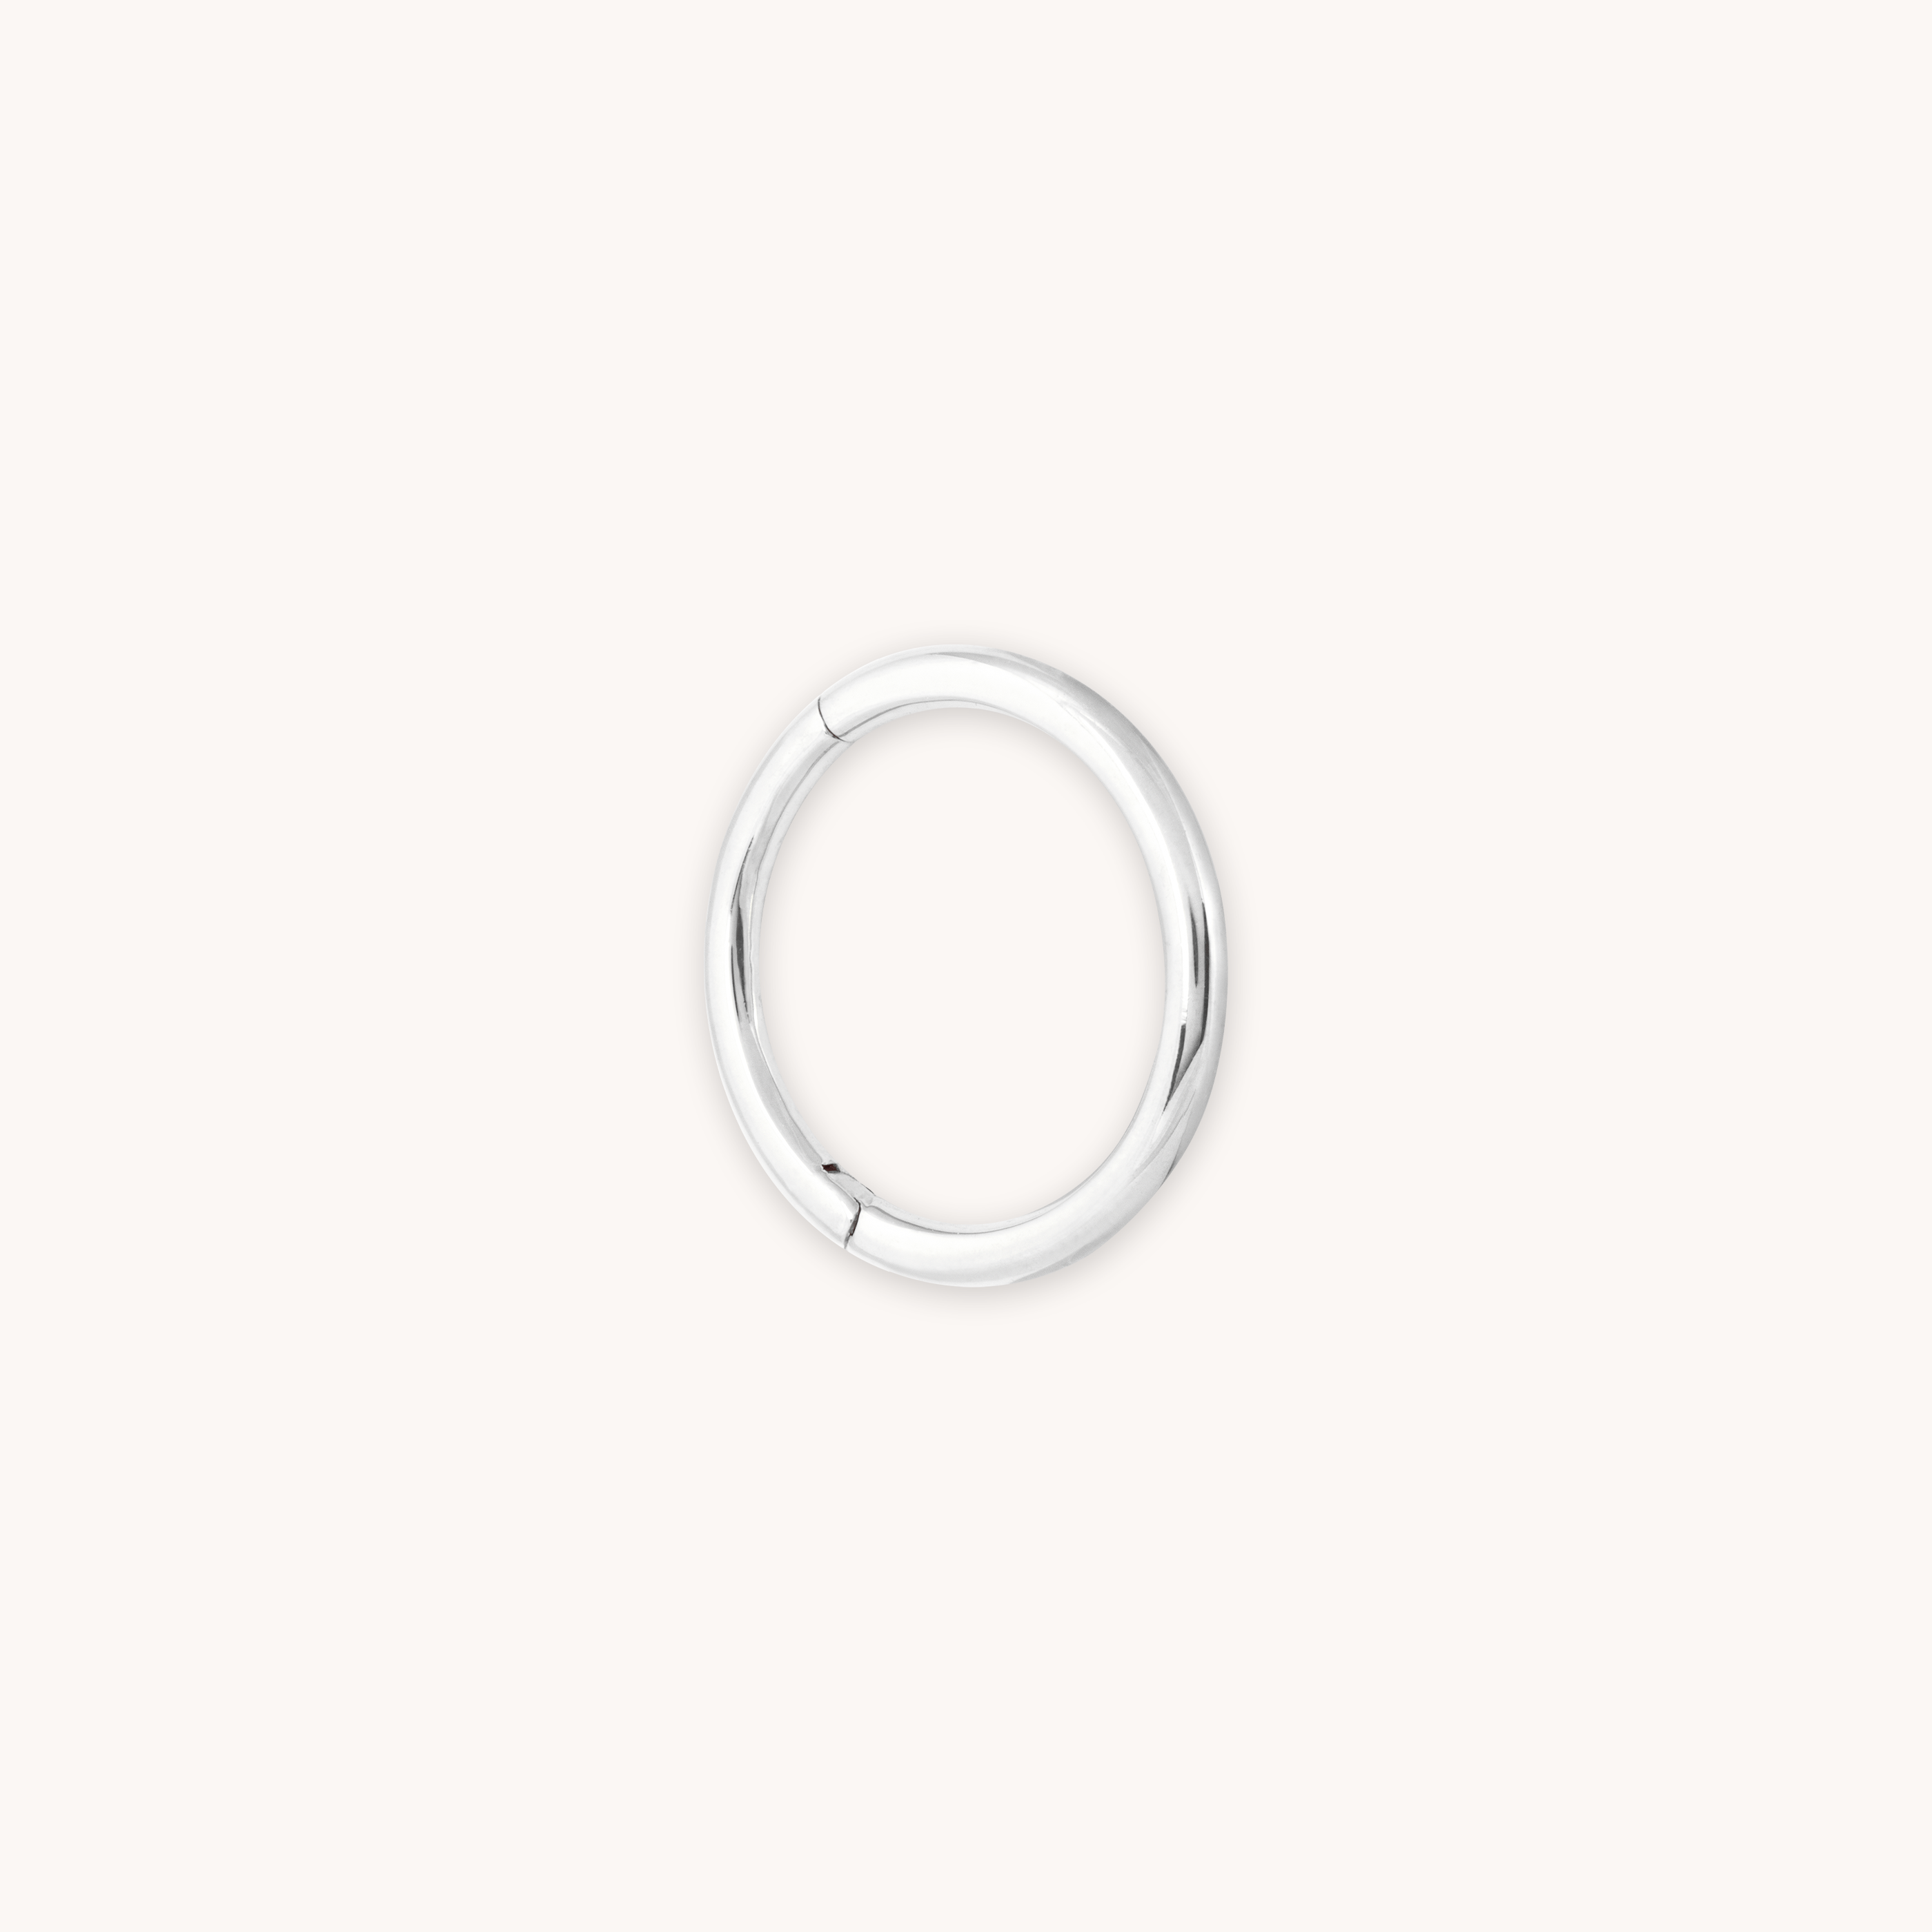 Solid White Gold Simple Piercing Hoop | Astrid & Miyu Earrings